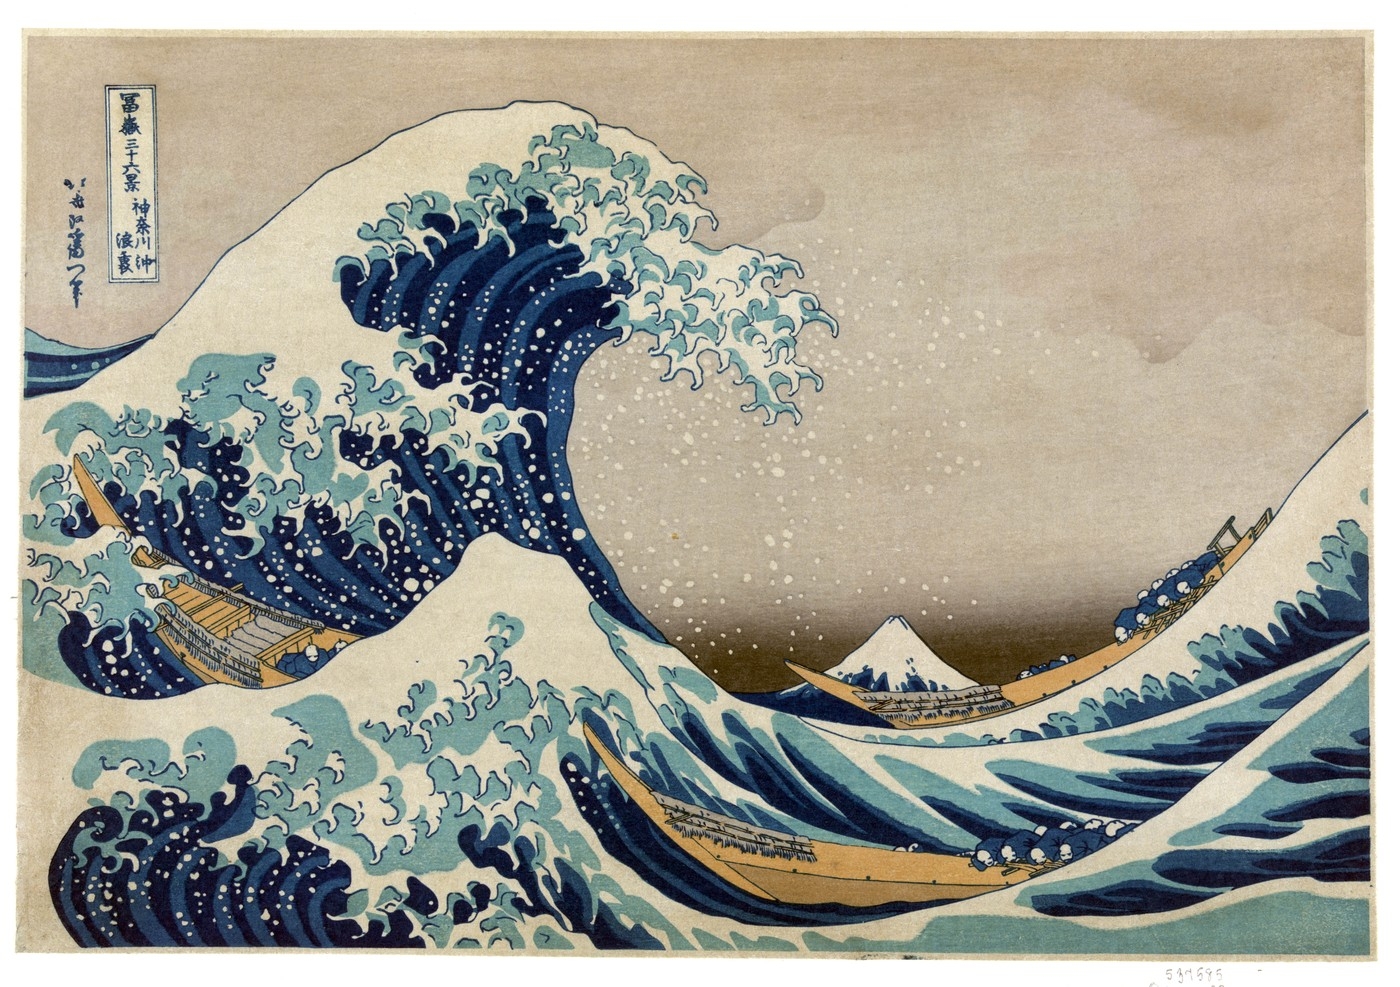 Mistr japonského malířství Hokusai se stal nesmrtelným prostřednictvím svých děl